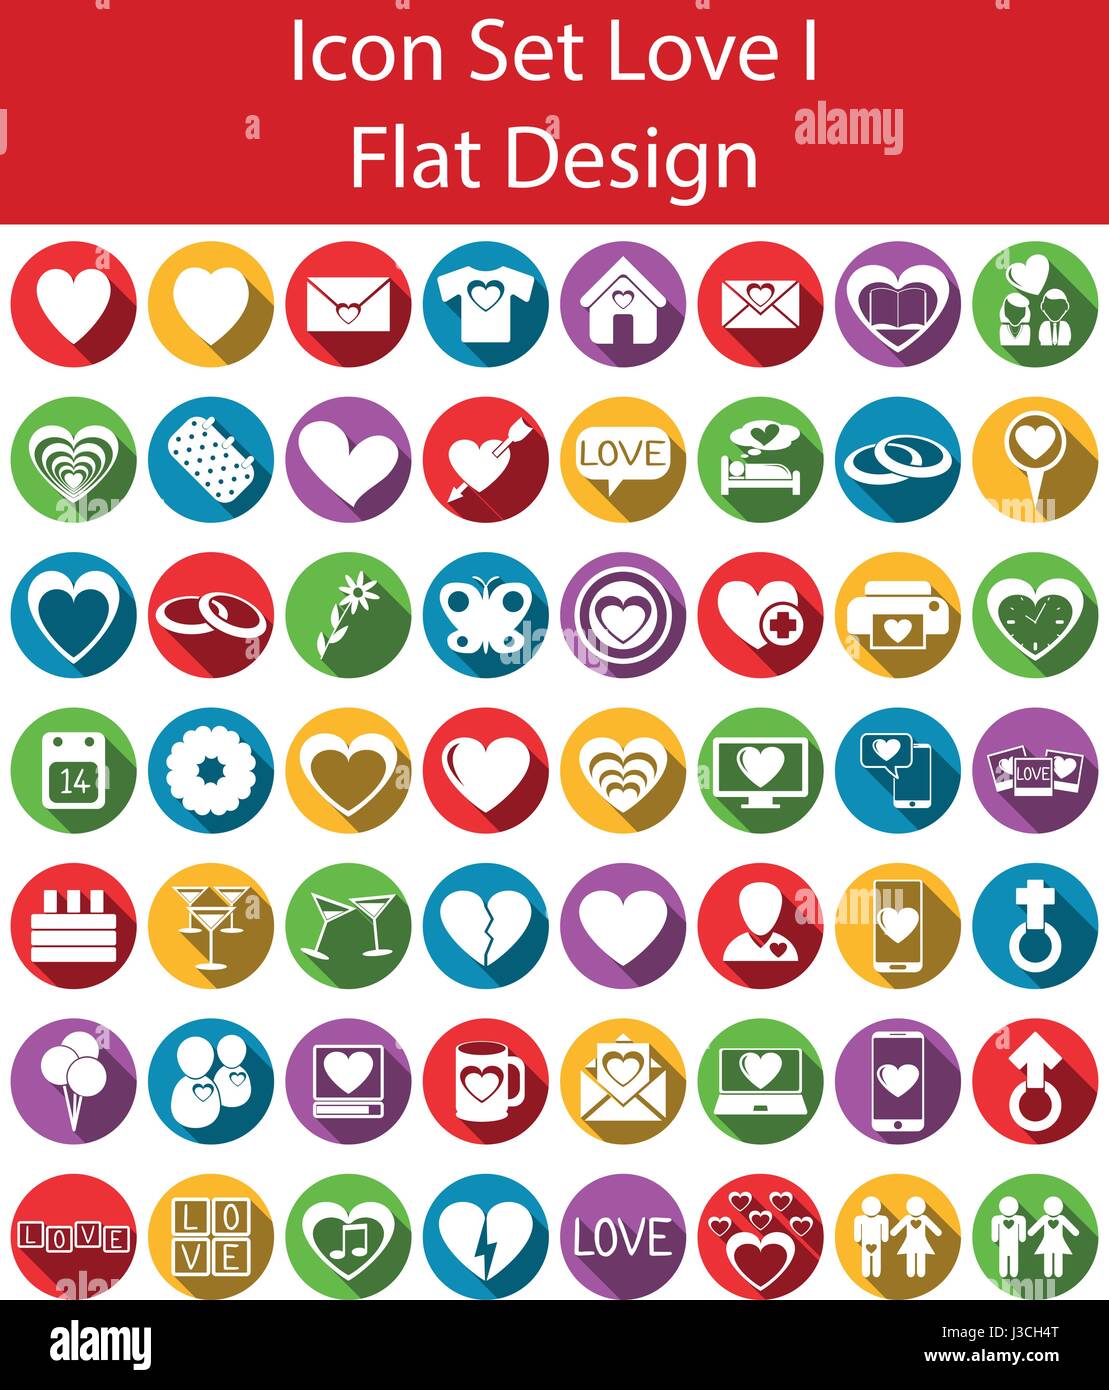 Flache Design-Icon-Set I Love mit 56 Symbole für verschiedene Kauf Stock Vektor